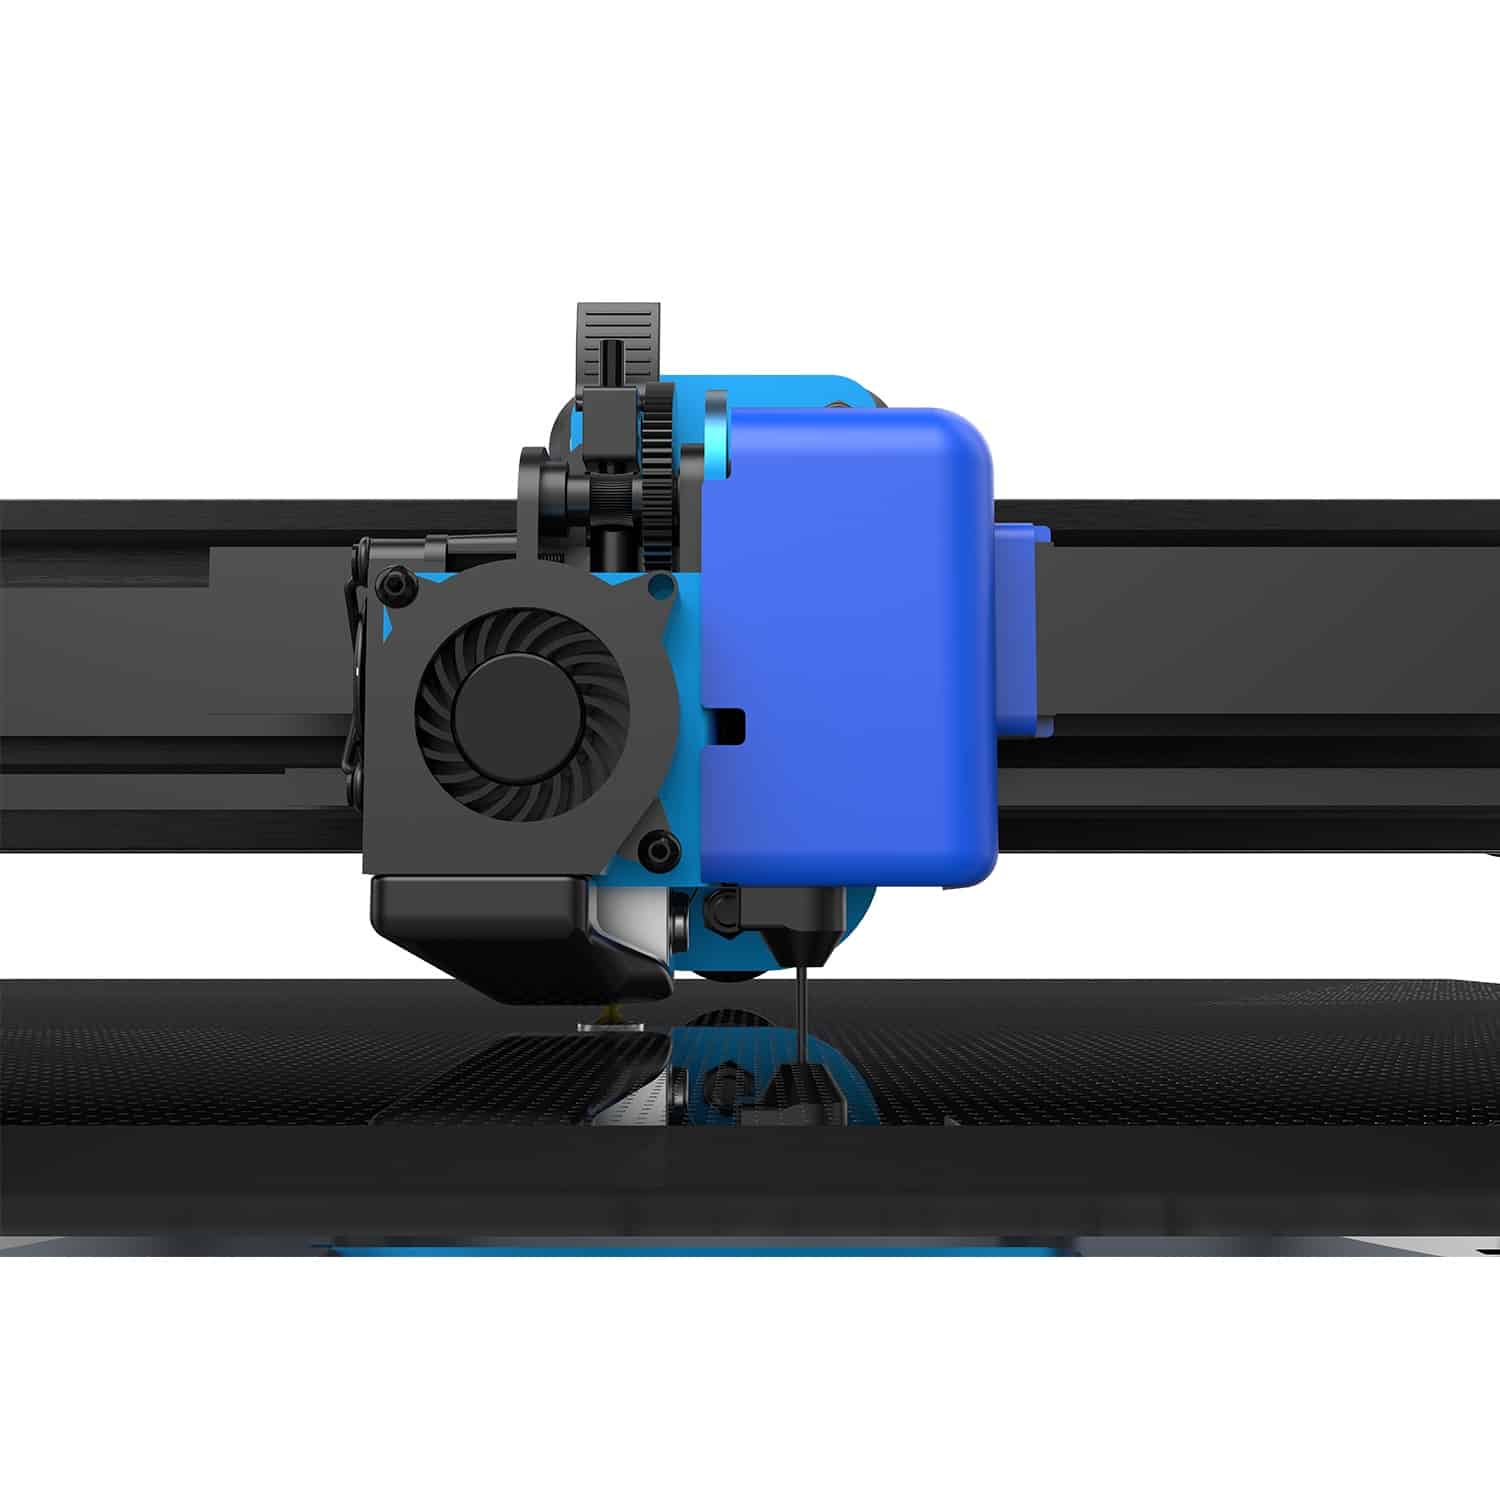 Stampante 3D Resina FDM Mini Stampante 3D X2 X3 S3 Kit fai da te Stampa  veloce 200mm/s Scheda madre silenziosa Estrusore diretto Stampante 3D  economica Livellamento automatico stampa ad alta velocità 